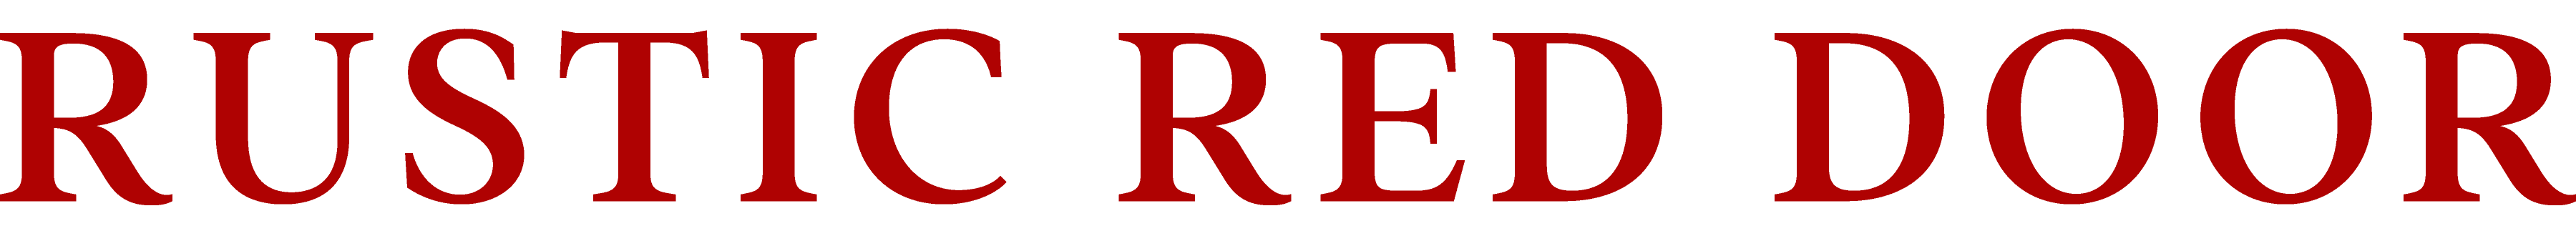 rustic red door logo